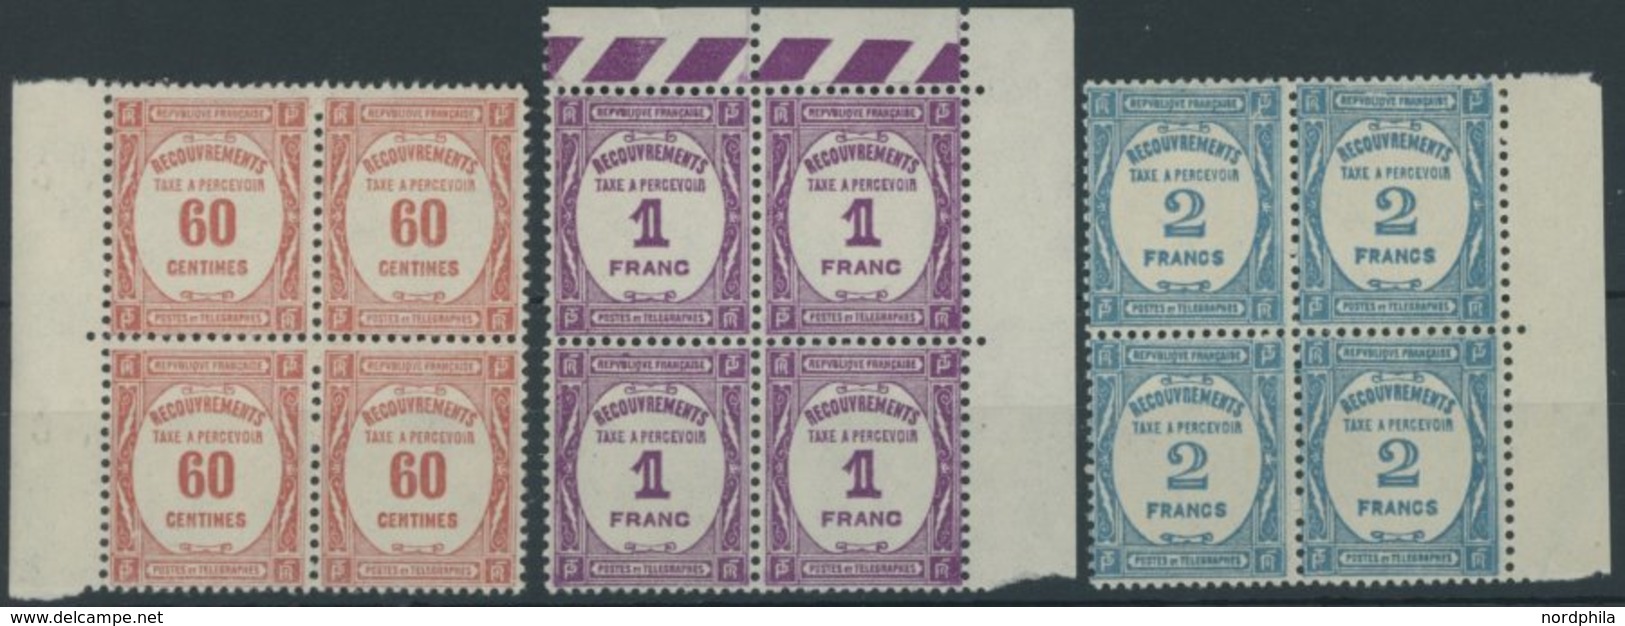 PORTOMARKEN P 59-61 VB **, 1927, 60 C. - 2 Fr. In Randviererblocks, Postfrisch, Pracht, Mi. 608.- - Portomarken